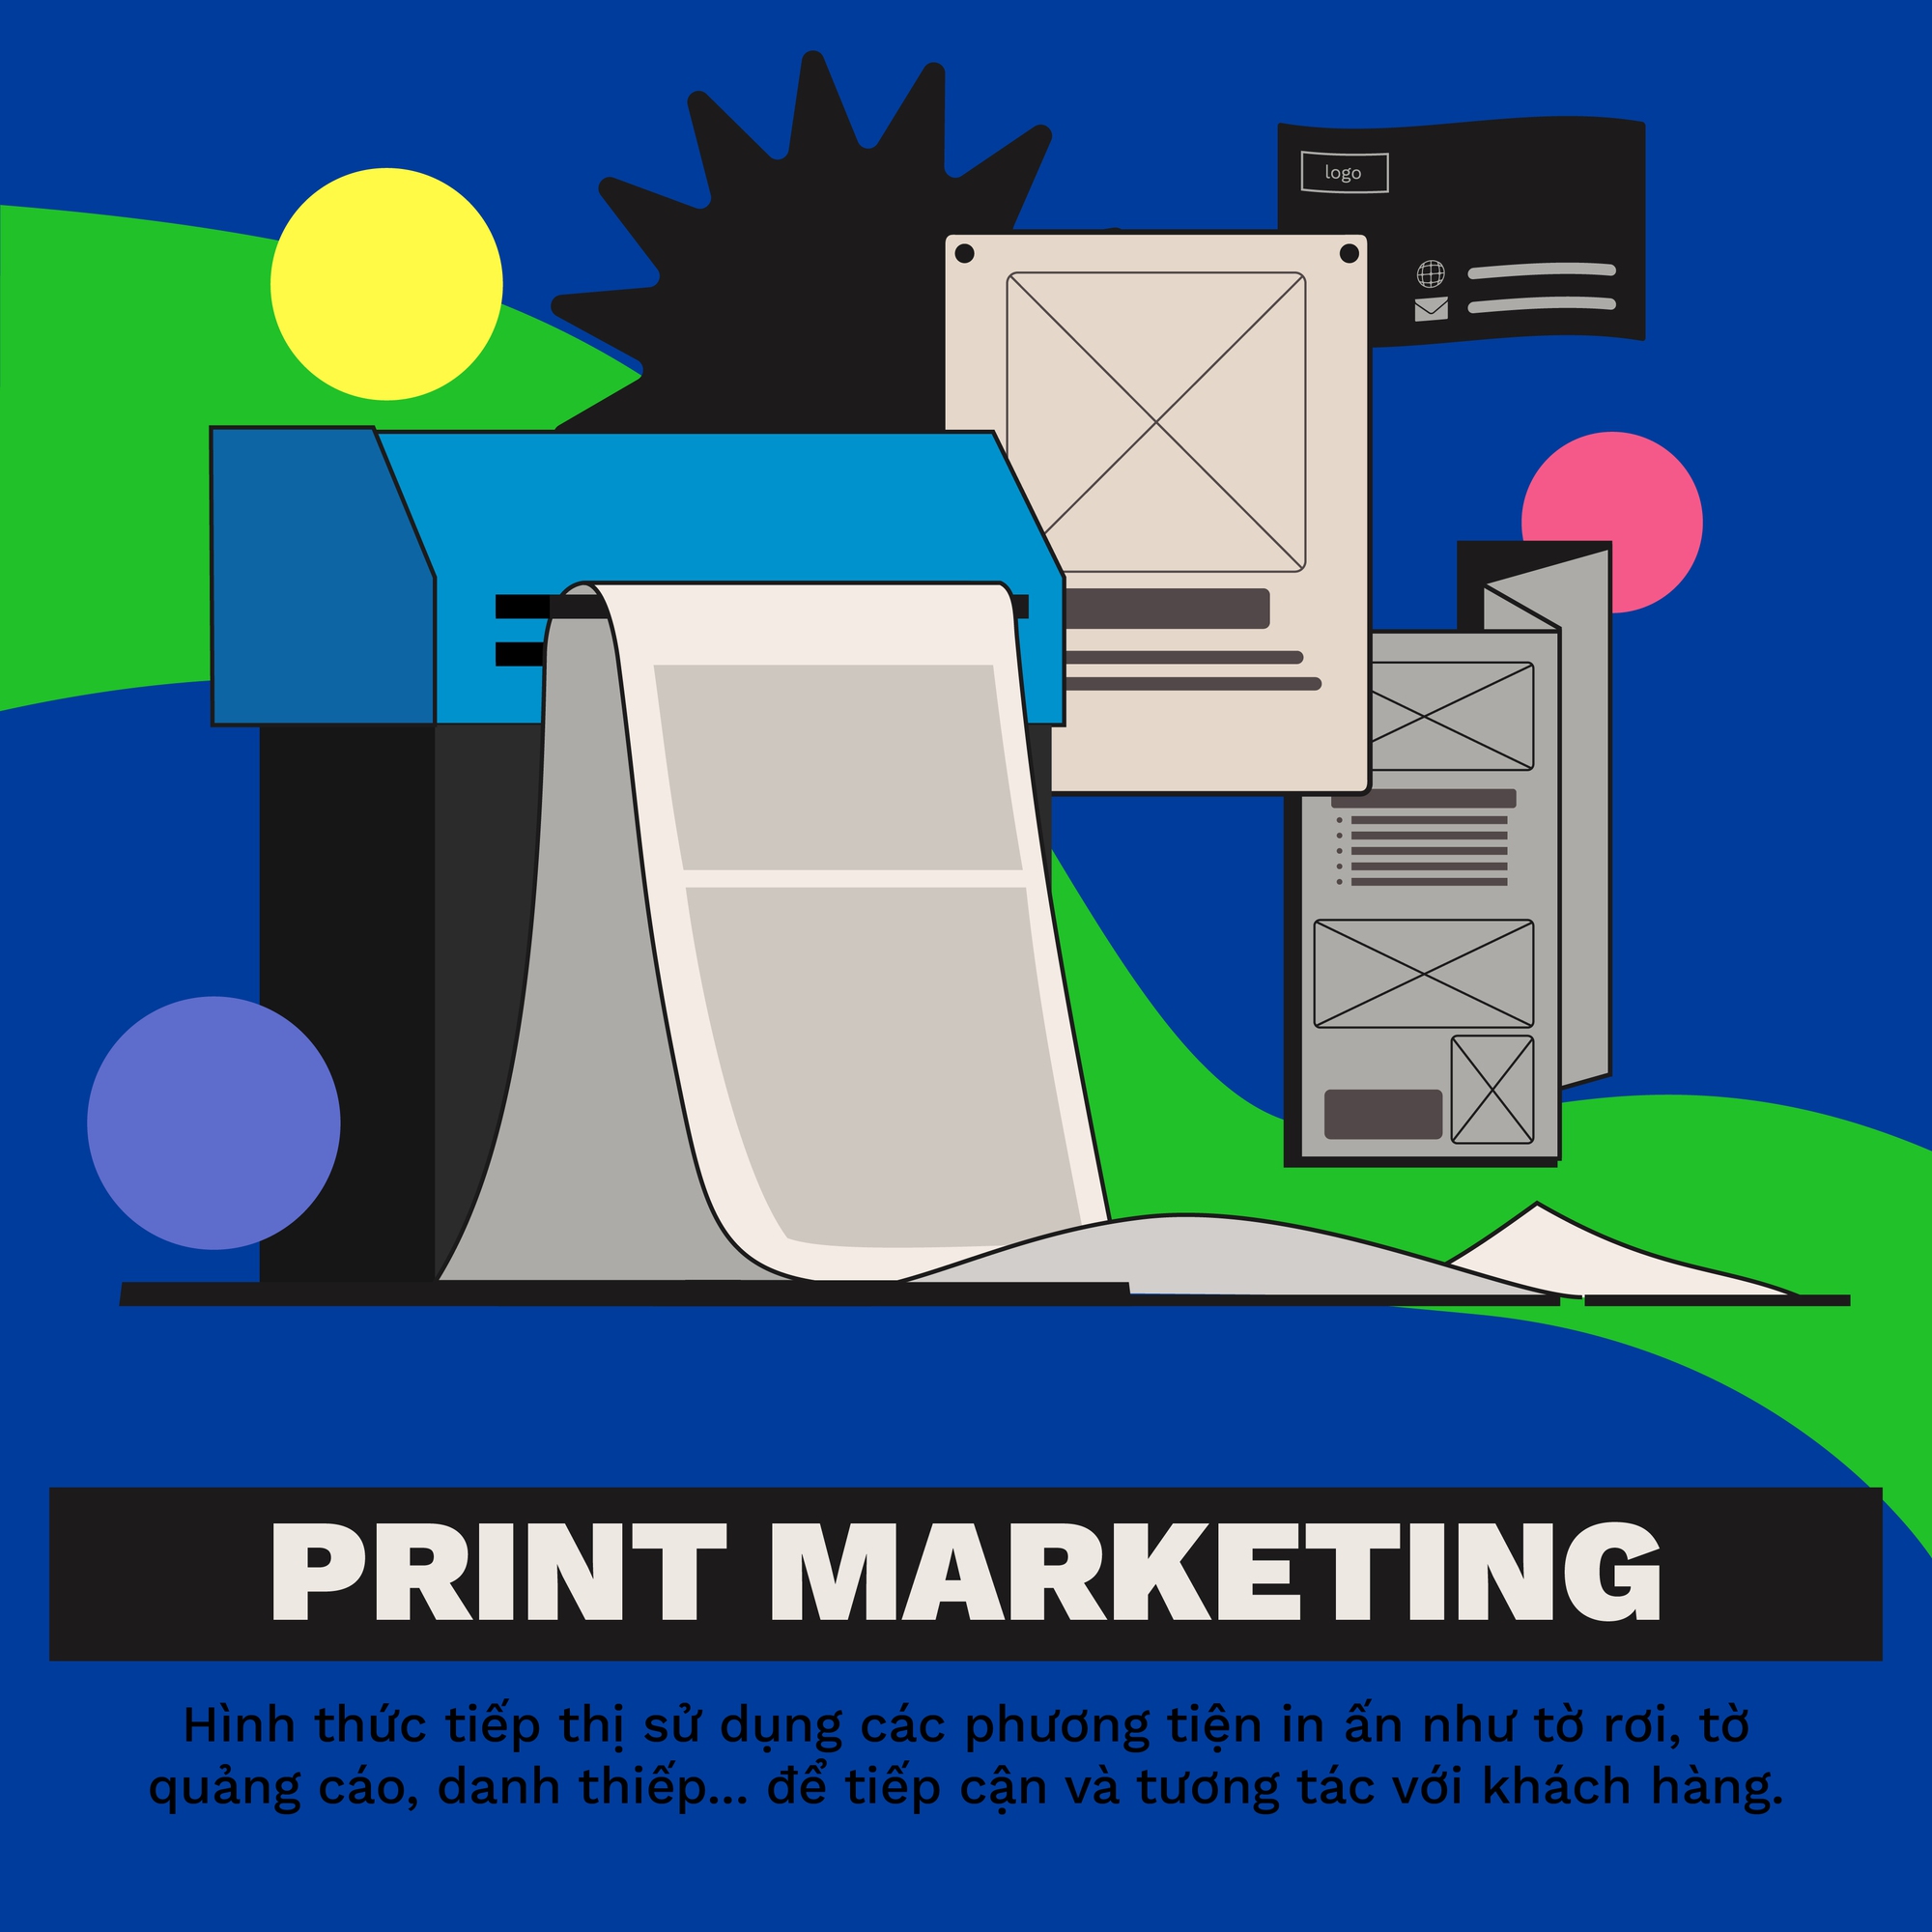 Print marketing làgì